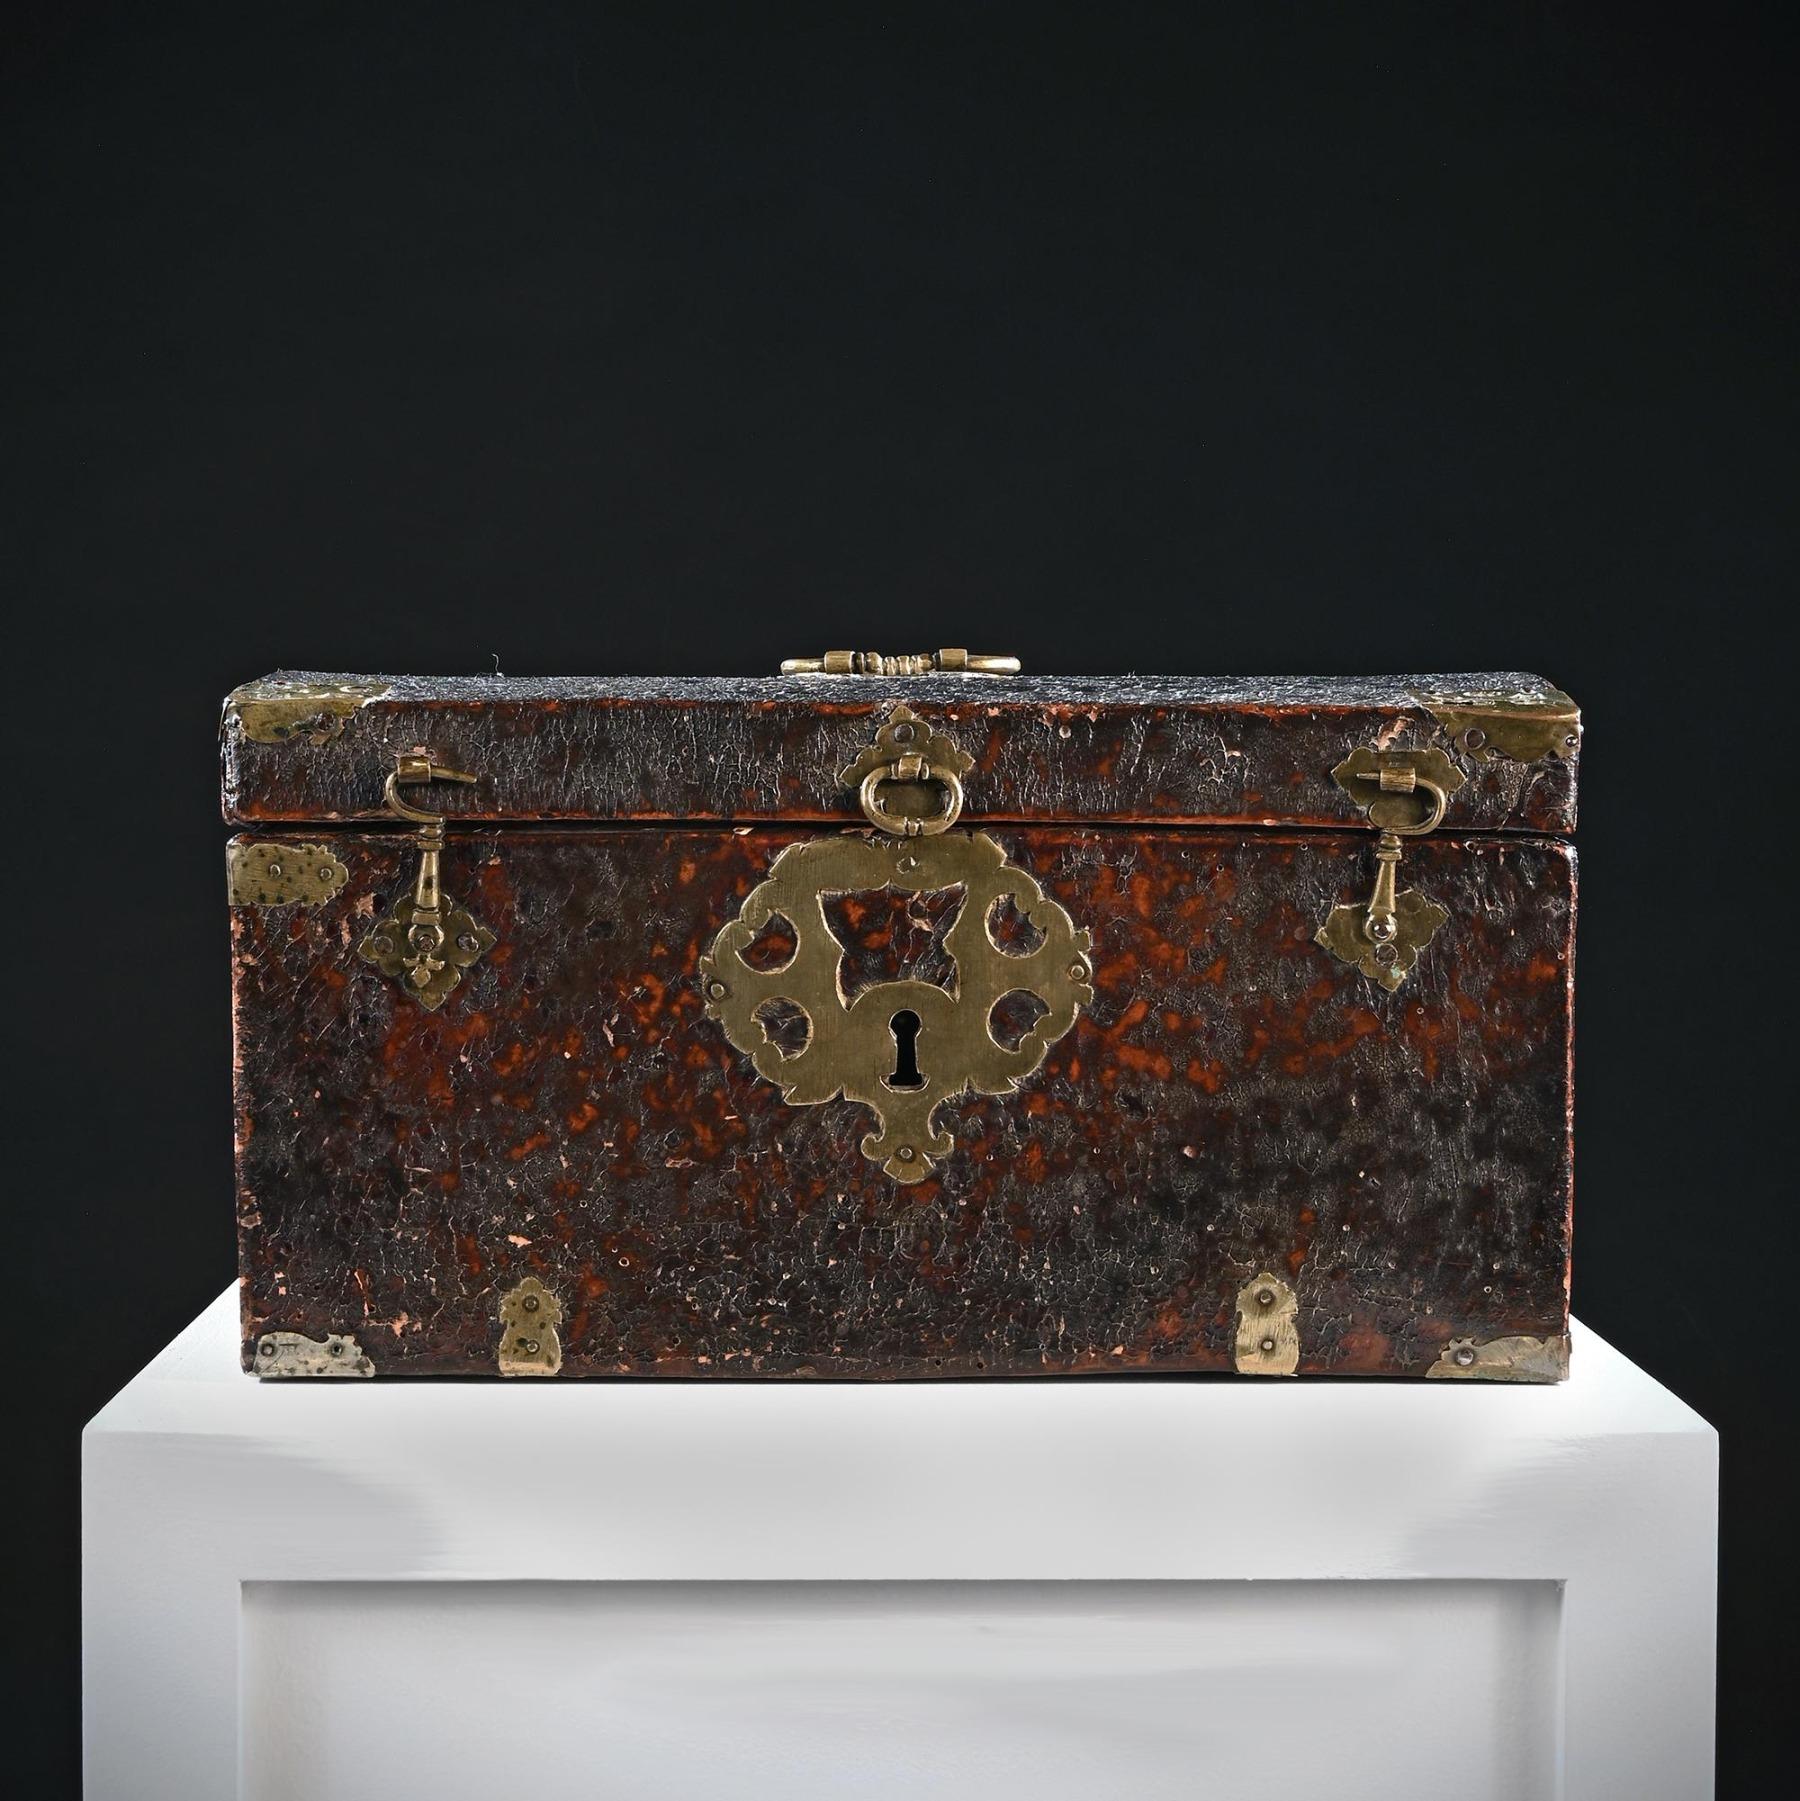 Très belle et intéressante boîte de travail ou de voyage anglaise de la fin du XVIIe siècle

Anglais Circa 1680

De forme conventionnelle avec un couvercle légèrement bombé, cette pièce a acquis une patine et une couleur magnifiques, le cuir